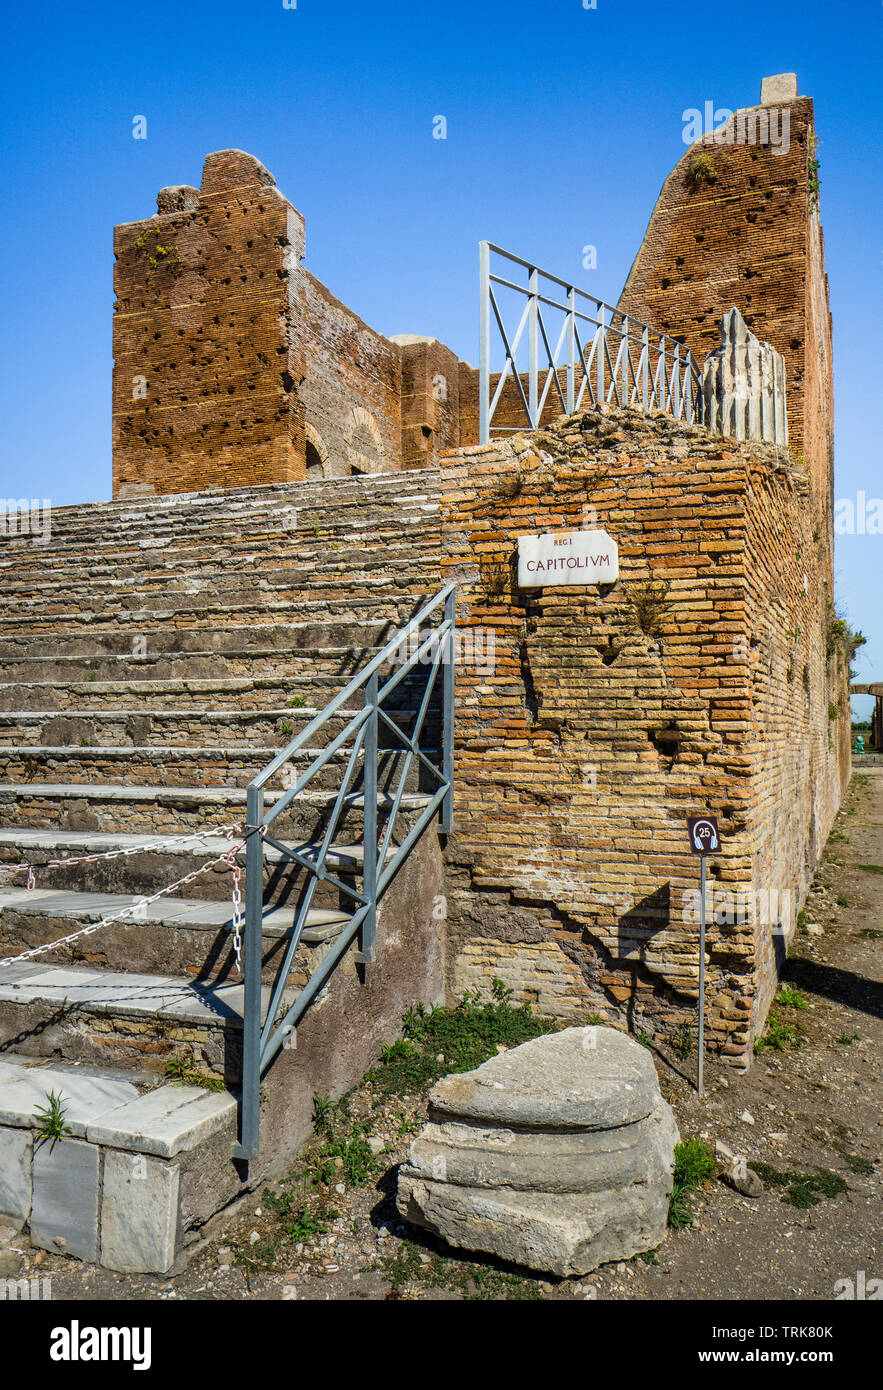 Le Capitole, un très grand temple romain au Forum de la ville romaine d'Ostia Antica, l'ancien port de la ville de Rome, Province de R Banque D'Images